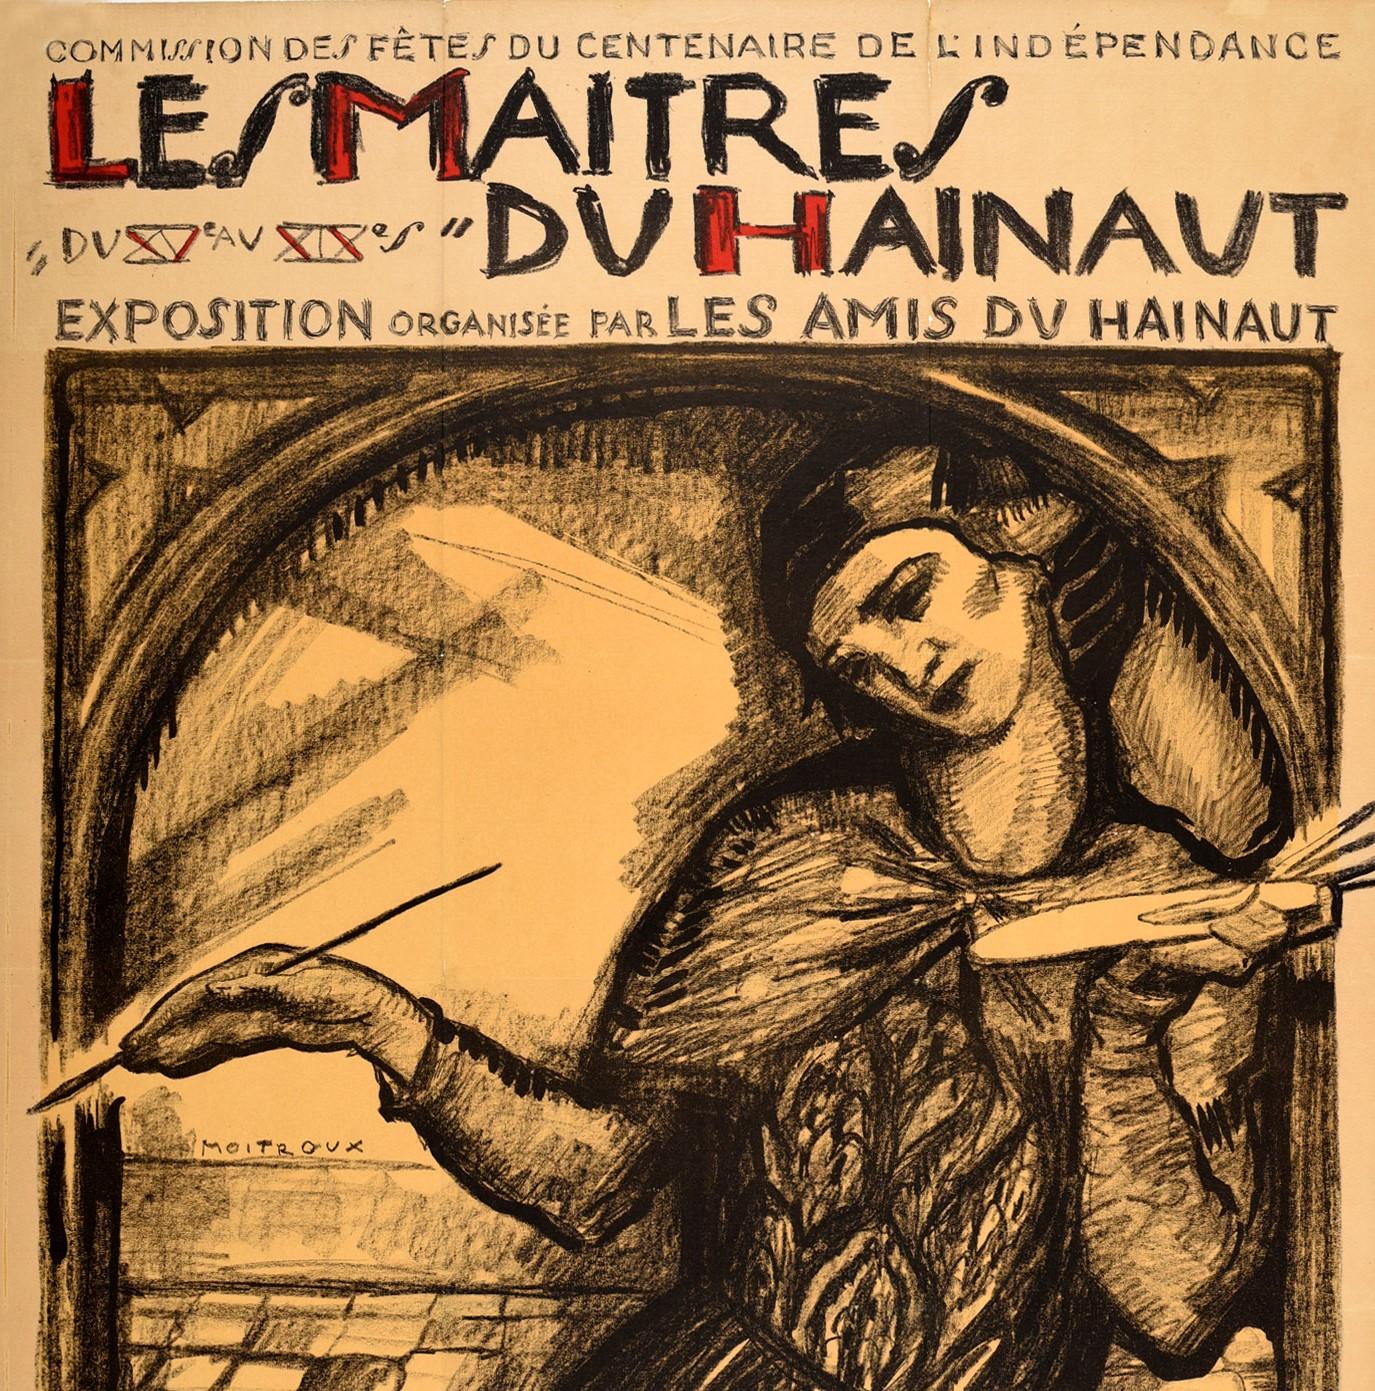 Originalplakat zur Werbung für die Ausstellung Les Maitres du Hainaut / Die Meister des Hennegaus im Museum der Schönen Künste in Mons, Belgien, die von den Freunden des Hennegaus organisiert wurde. Das Plakat zeigt ein Werk von Alfred Moitroux